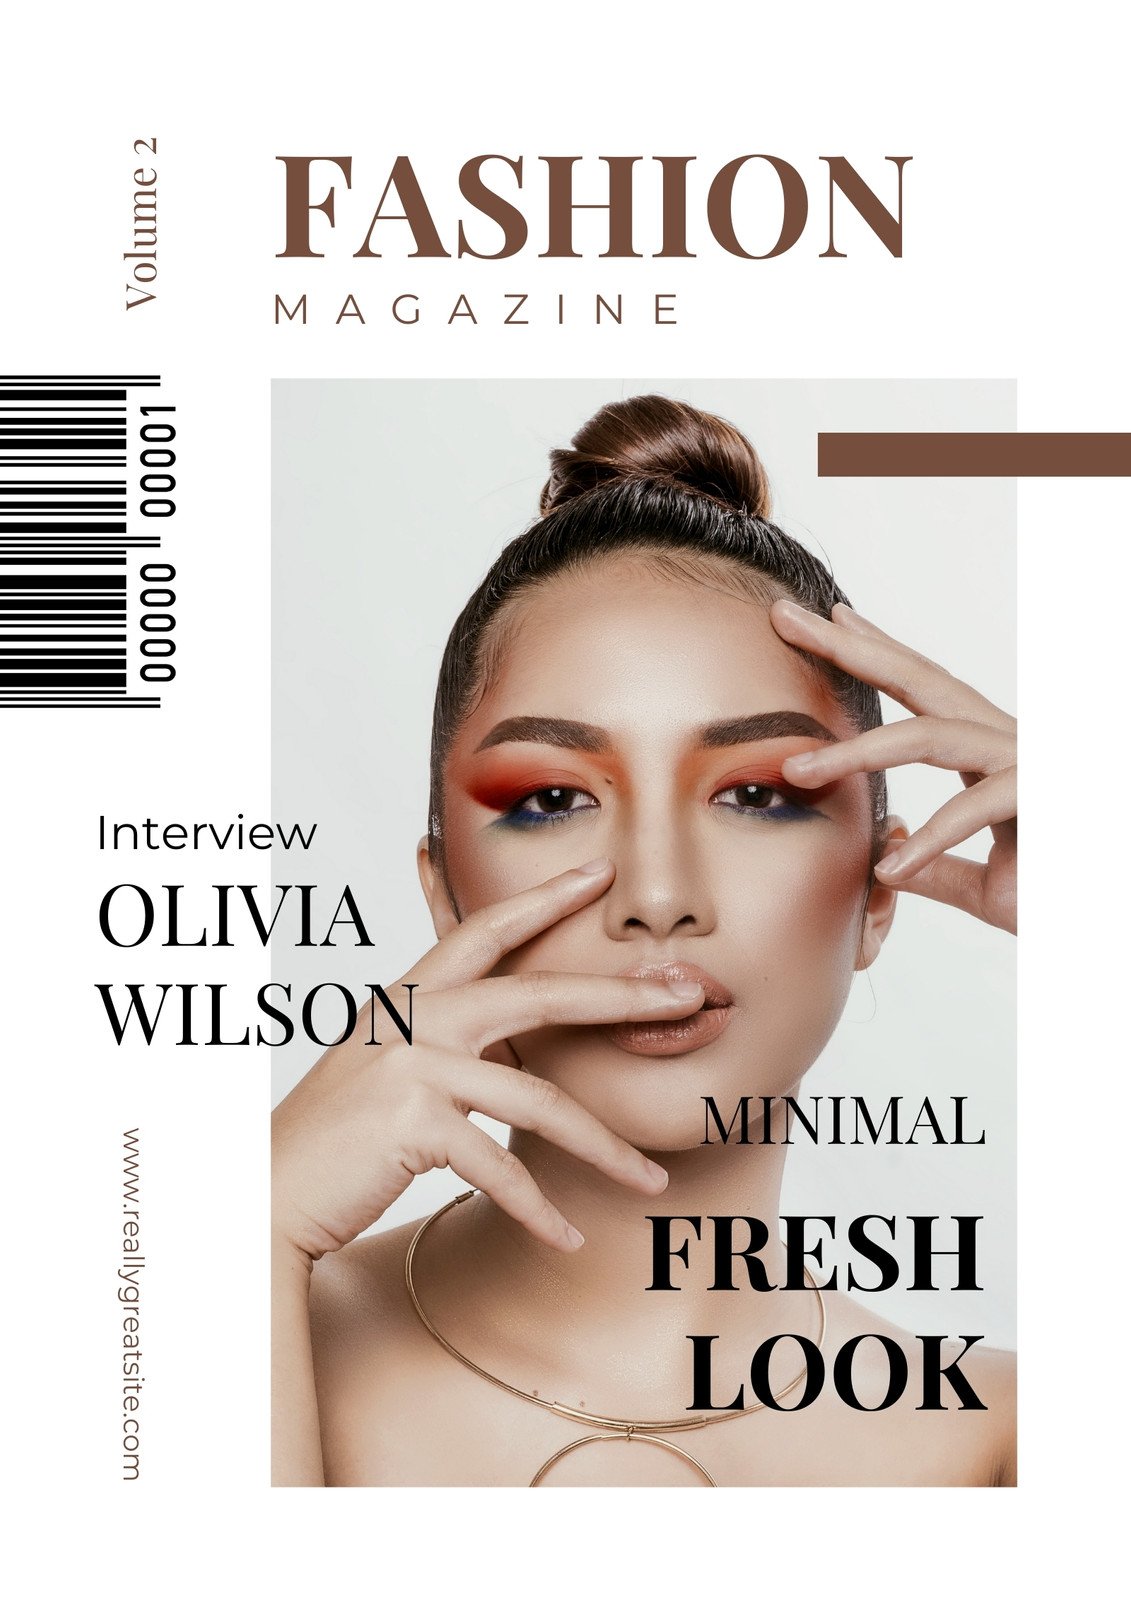 Magazine Cover Page Design